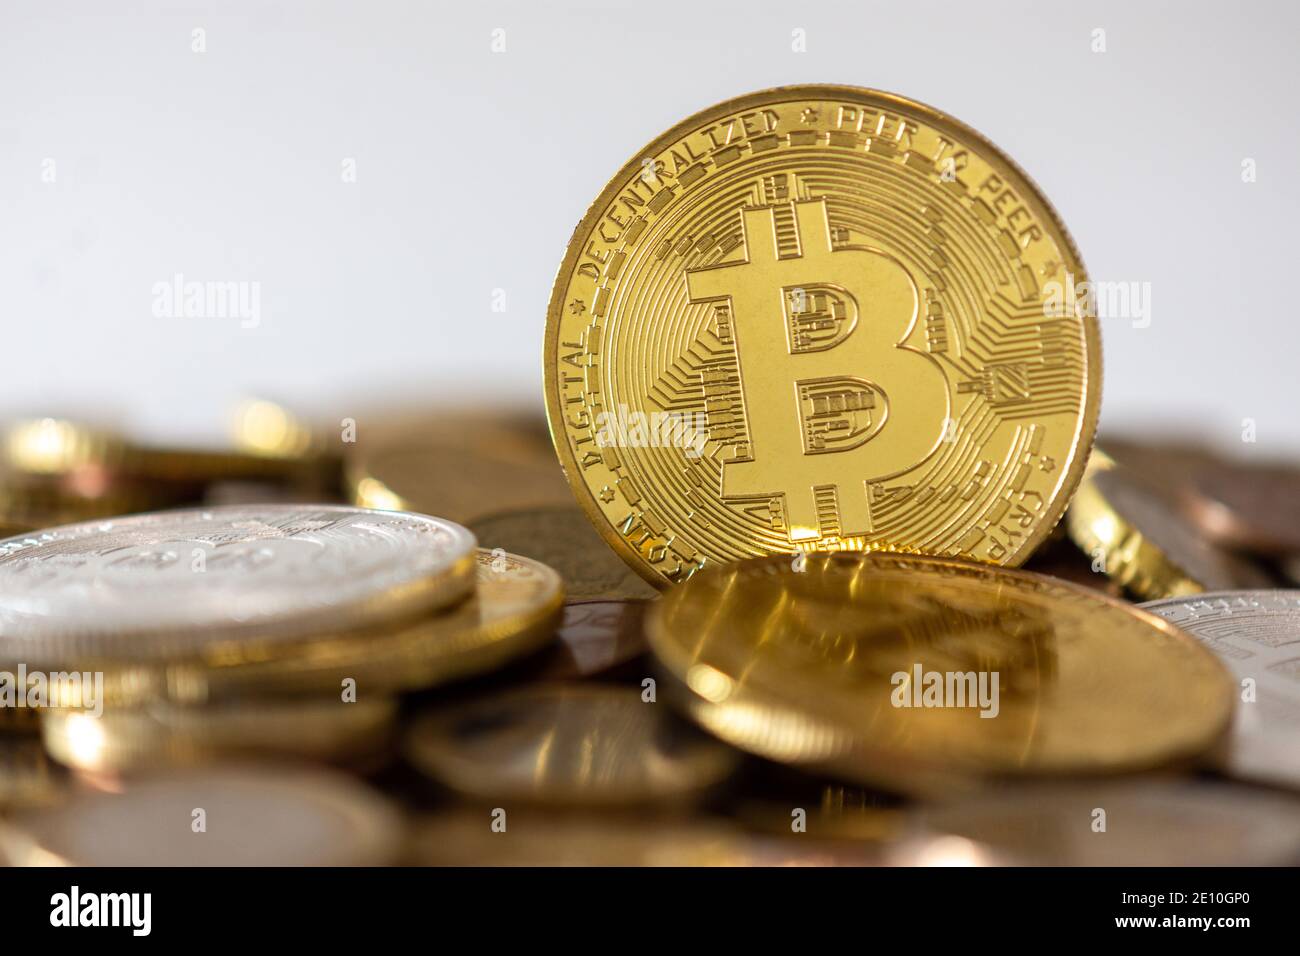 Eine goldene Bitcoin, die unter vielen verschwommenen Münzen steht. Bitcoin ist eine Kryptowährung, eine dezentrale digitale Währung ohne Zentralbank Stockfoto